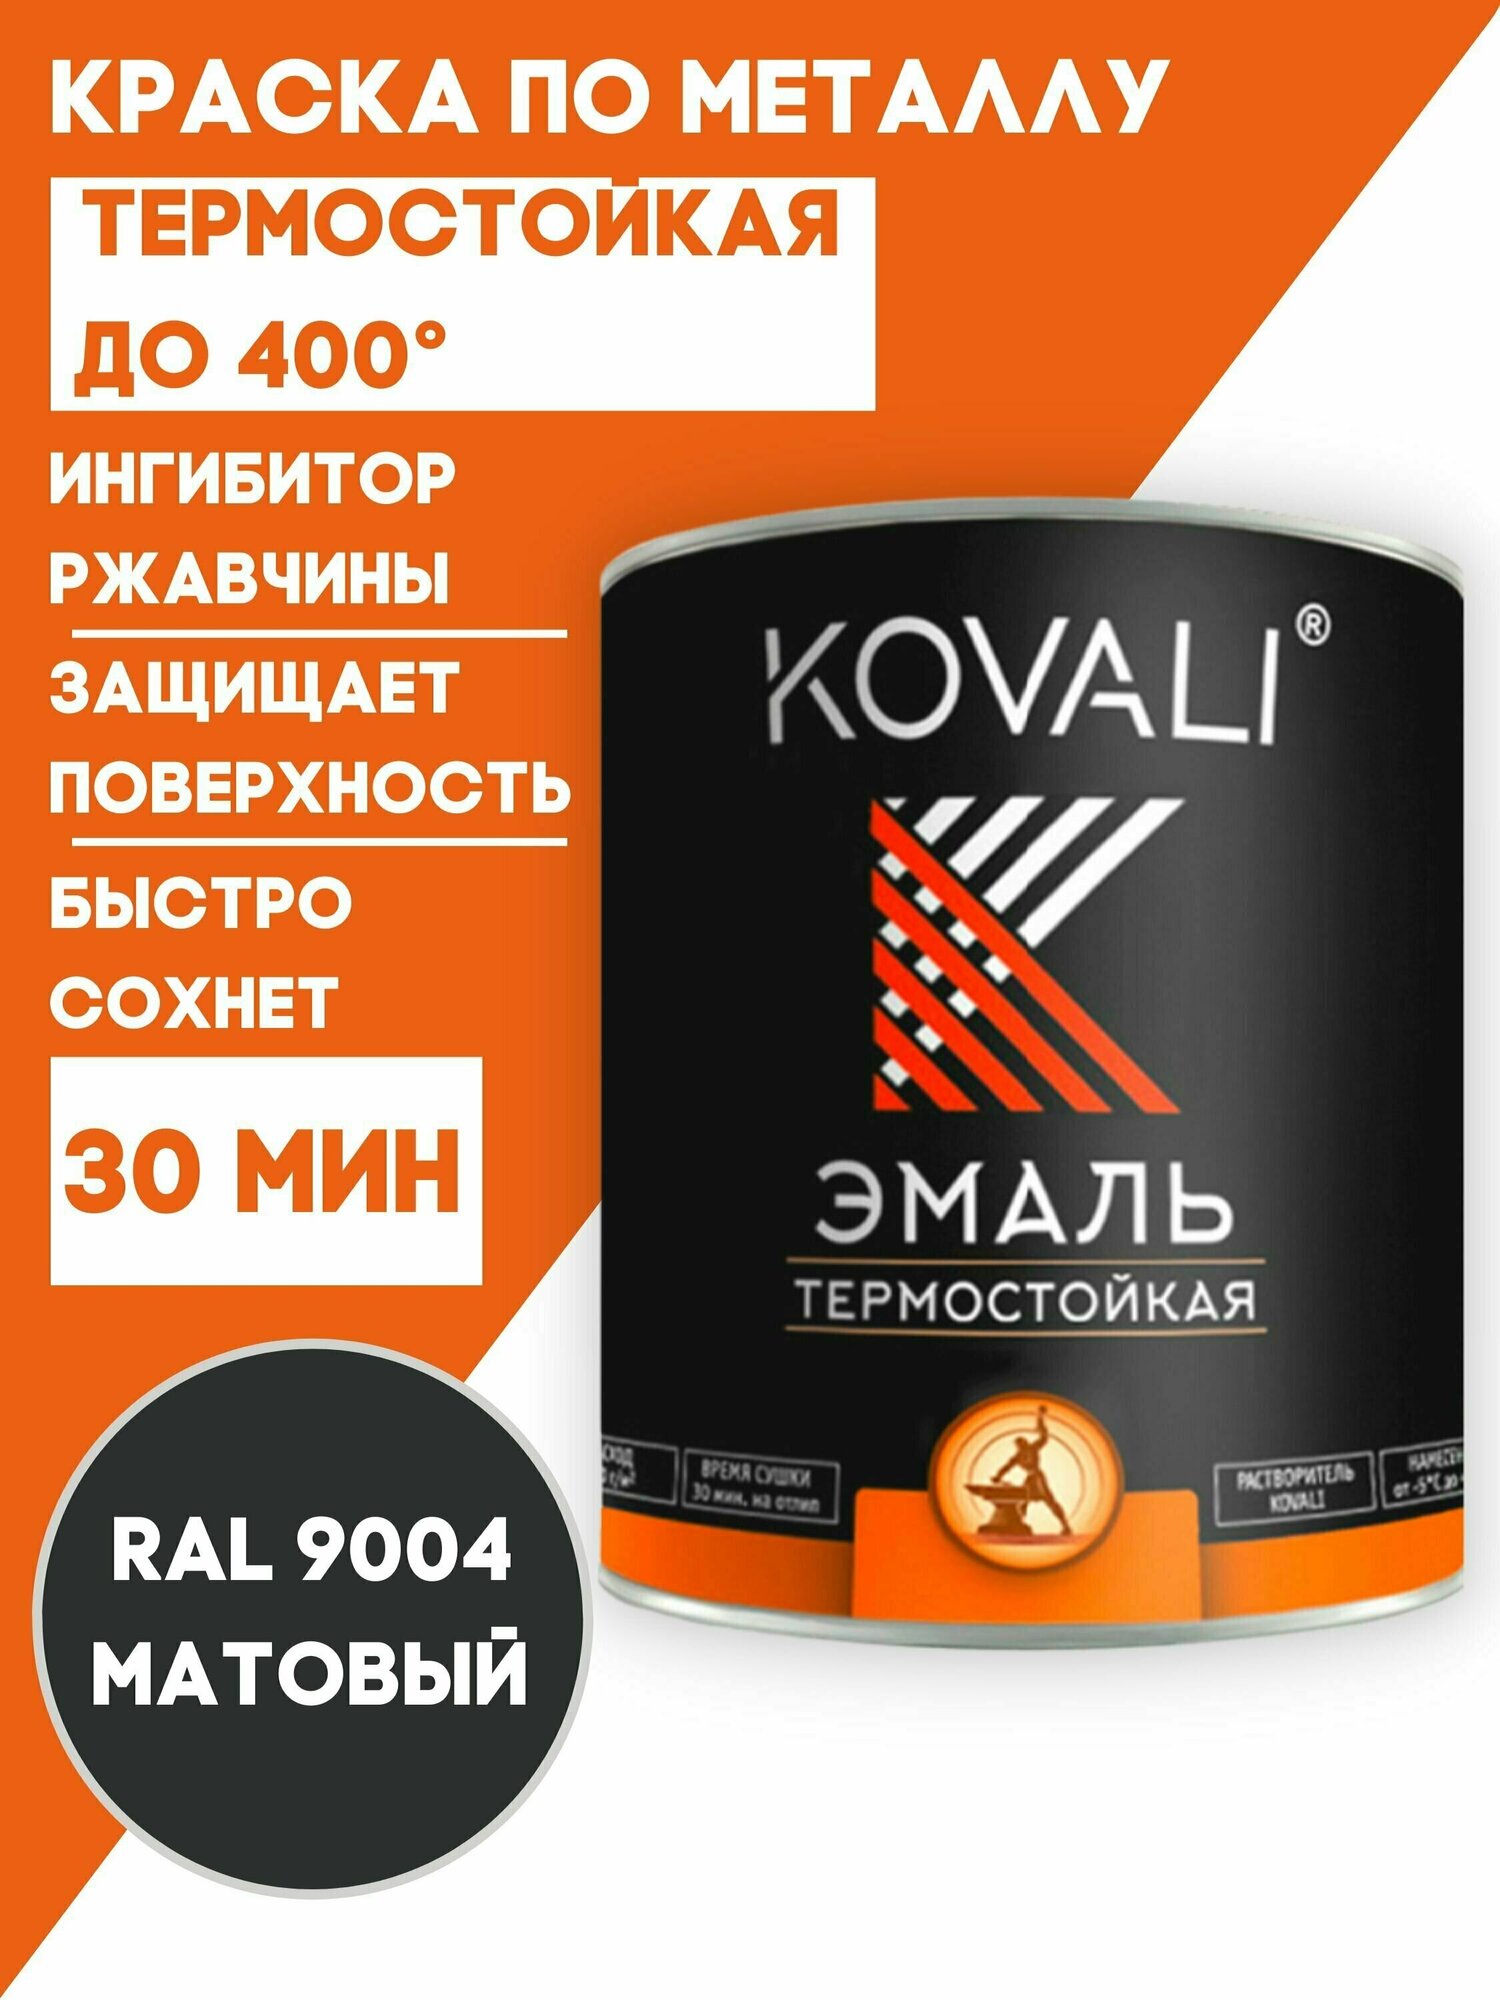 Термостойкая эмаль KOVALI RAL 9004 Сигнальный черный 400С 0,8кг краска по металлу, по ржавчине, быстросохнущая ,краска Ковали - фотография № 3